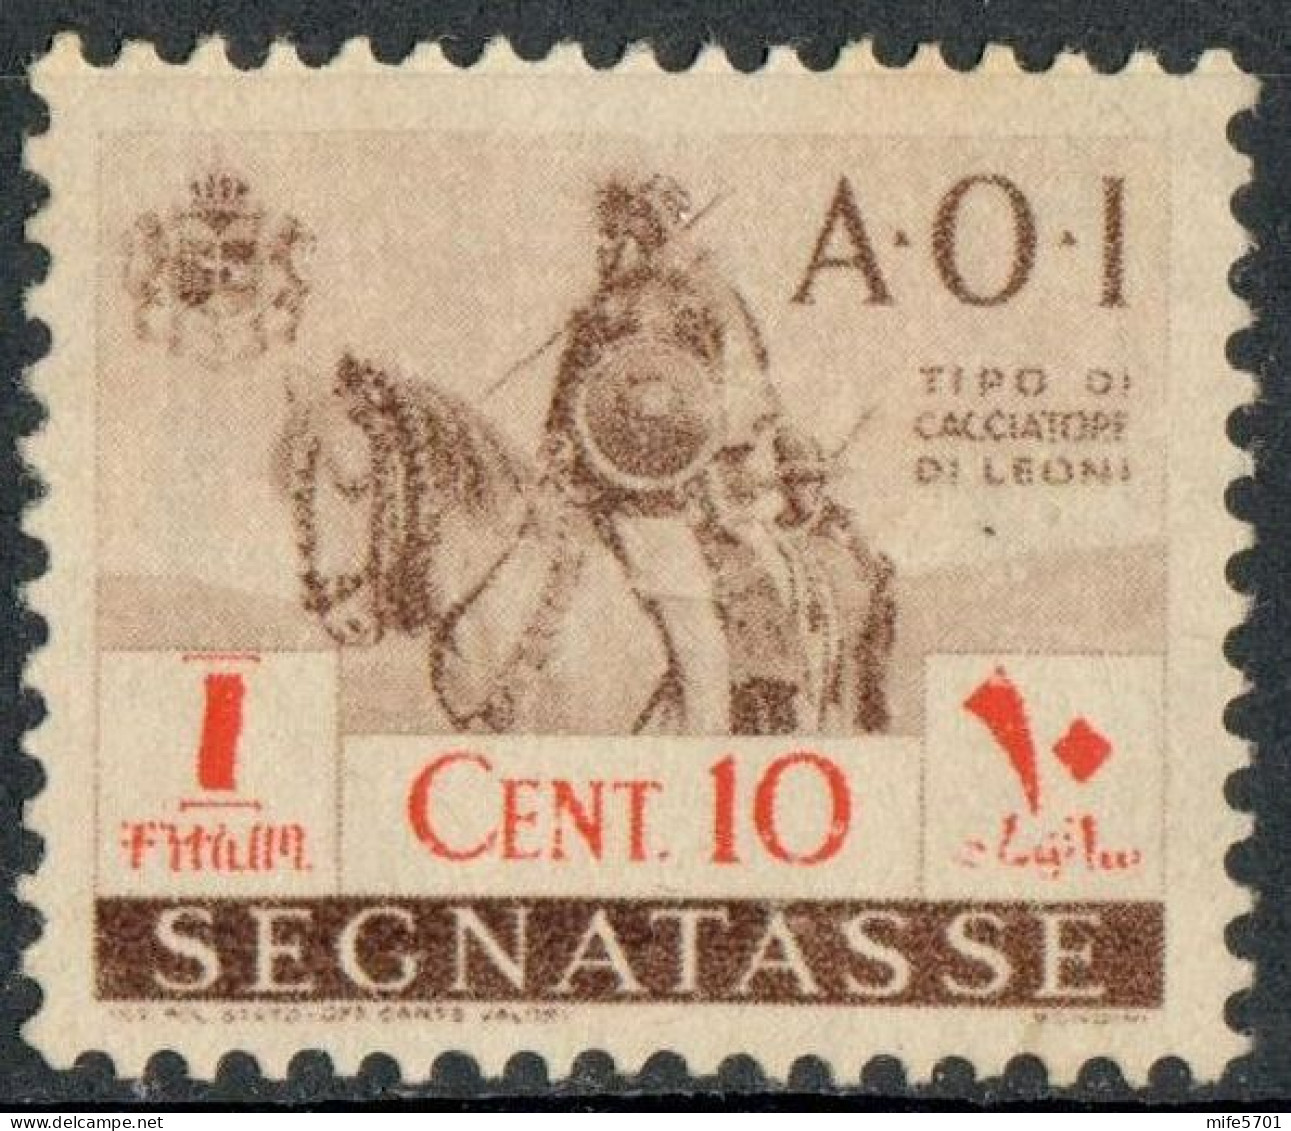 REGNO AFRICA ORIENTALE ITALIANA 1941 A.O.I. SEGNATASSE 'CACCIATORE DI LEONI A CAVALLO' C. 10 SENZA GOMMA (*) SASSONE 11 - Italian Eastern Africa